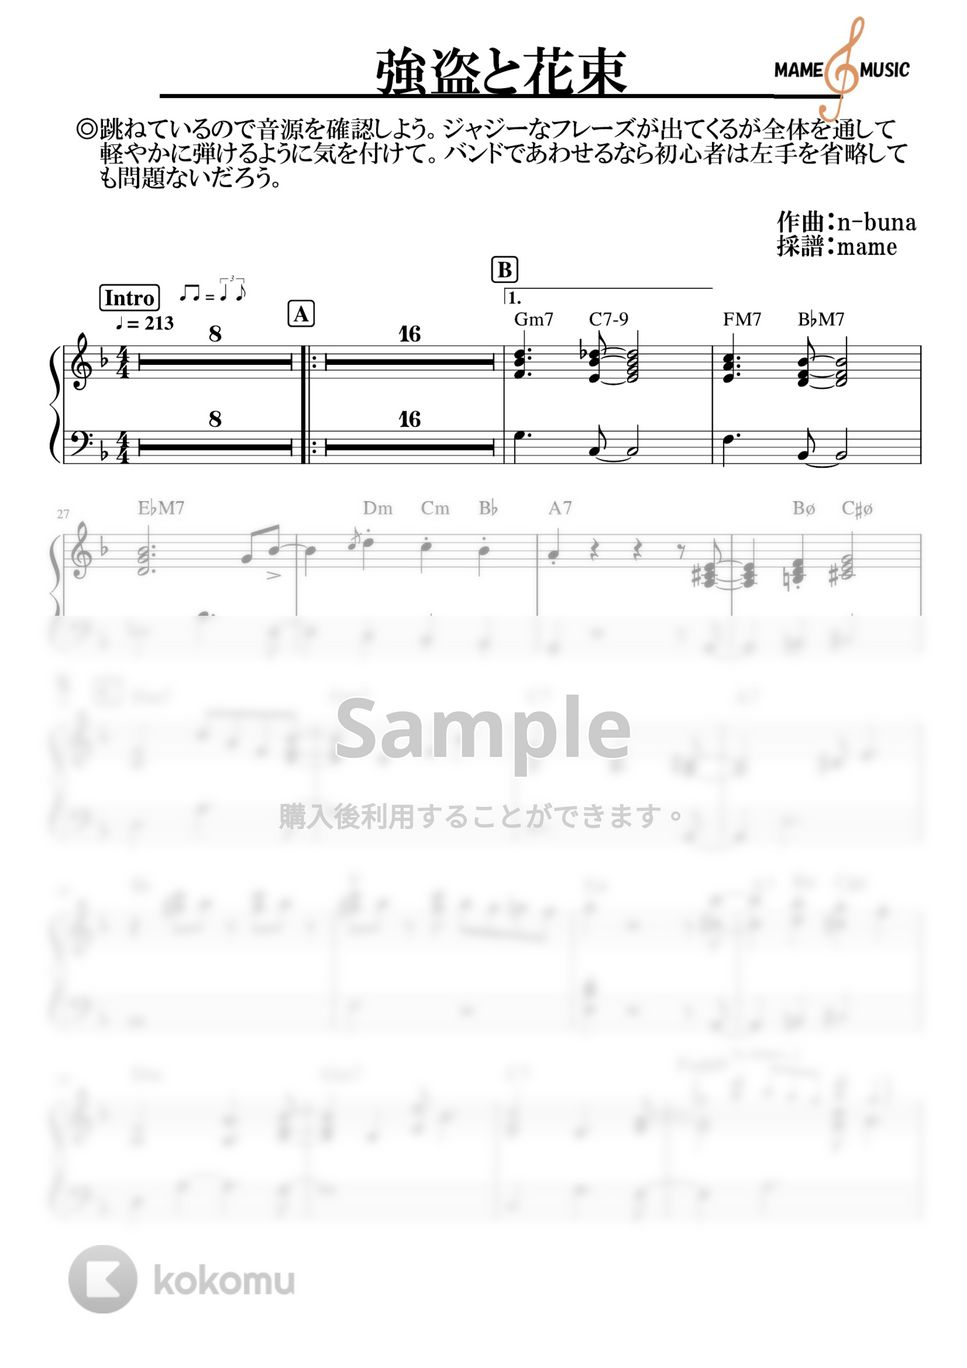 ヨルシカ - 強盗と花束 (ピアノパート) by mame